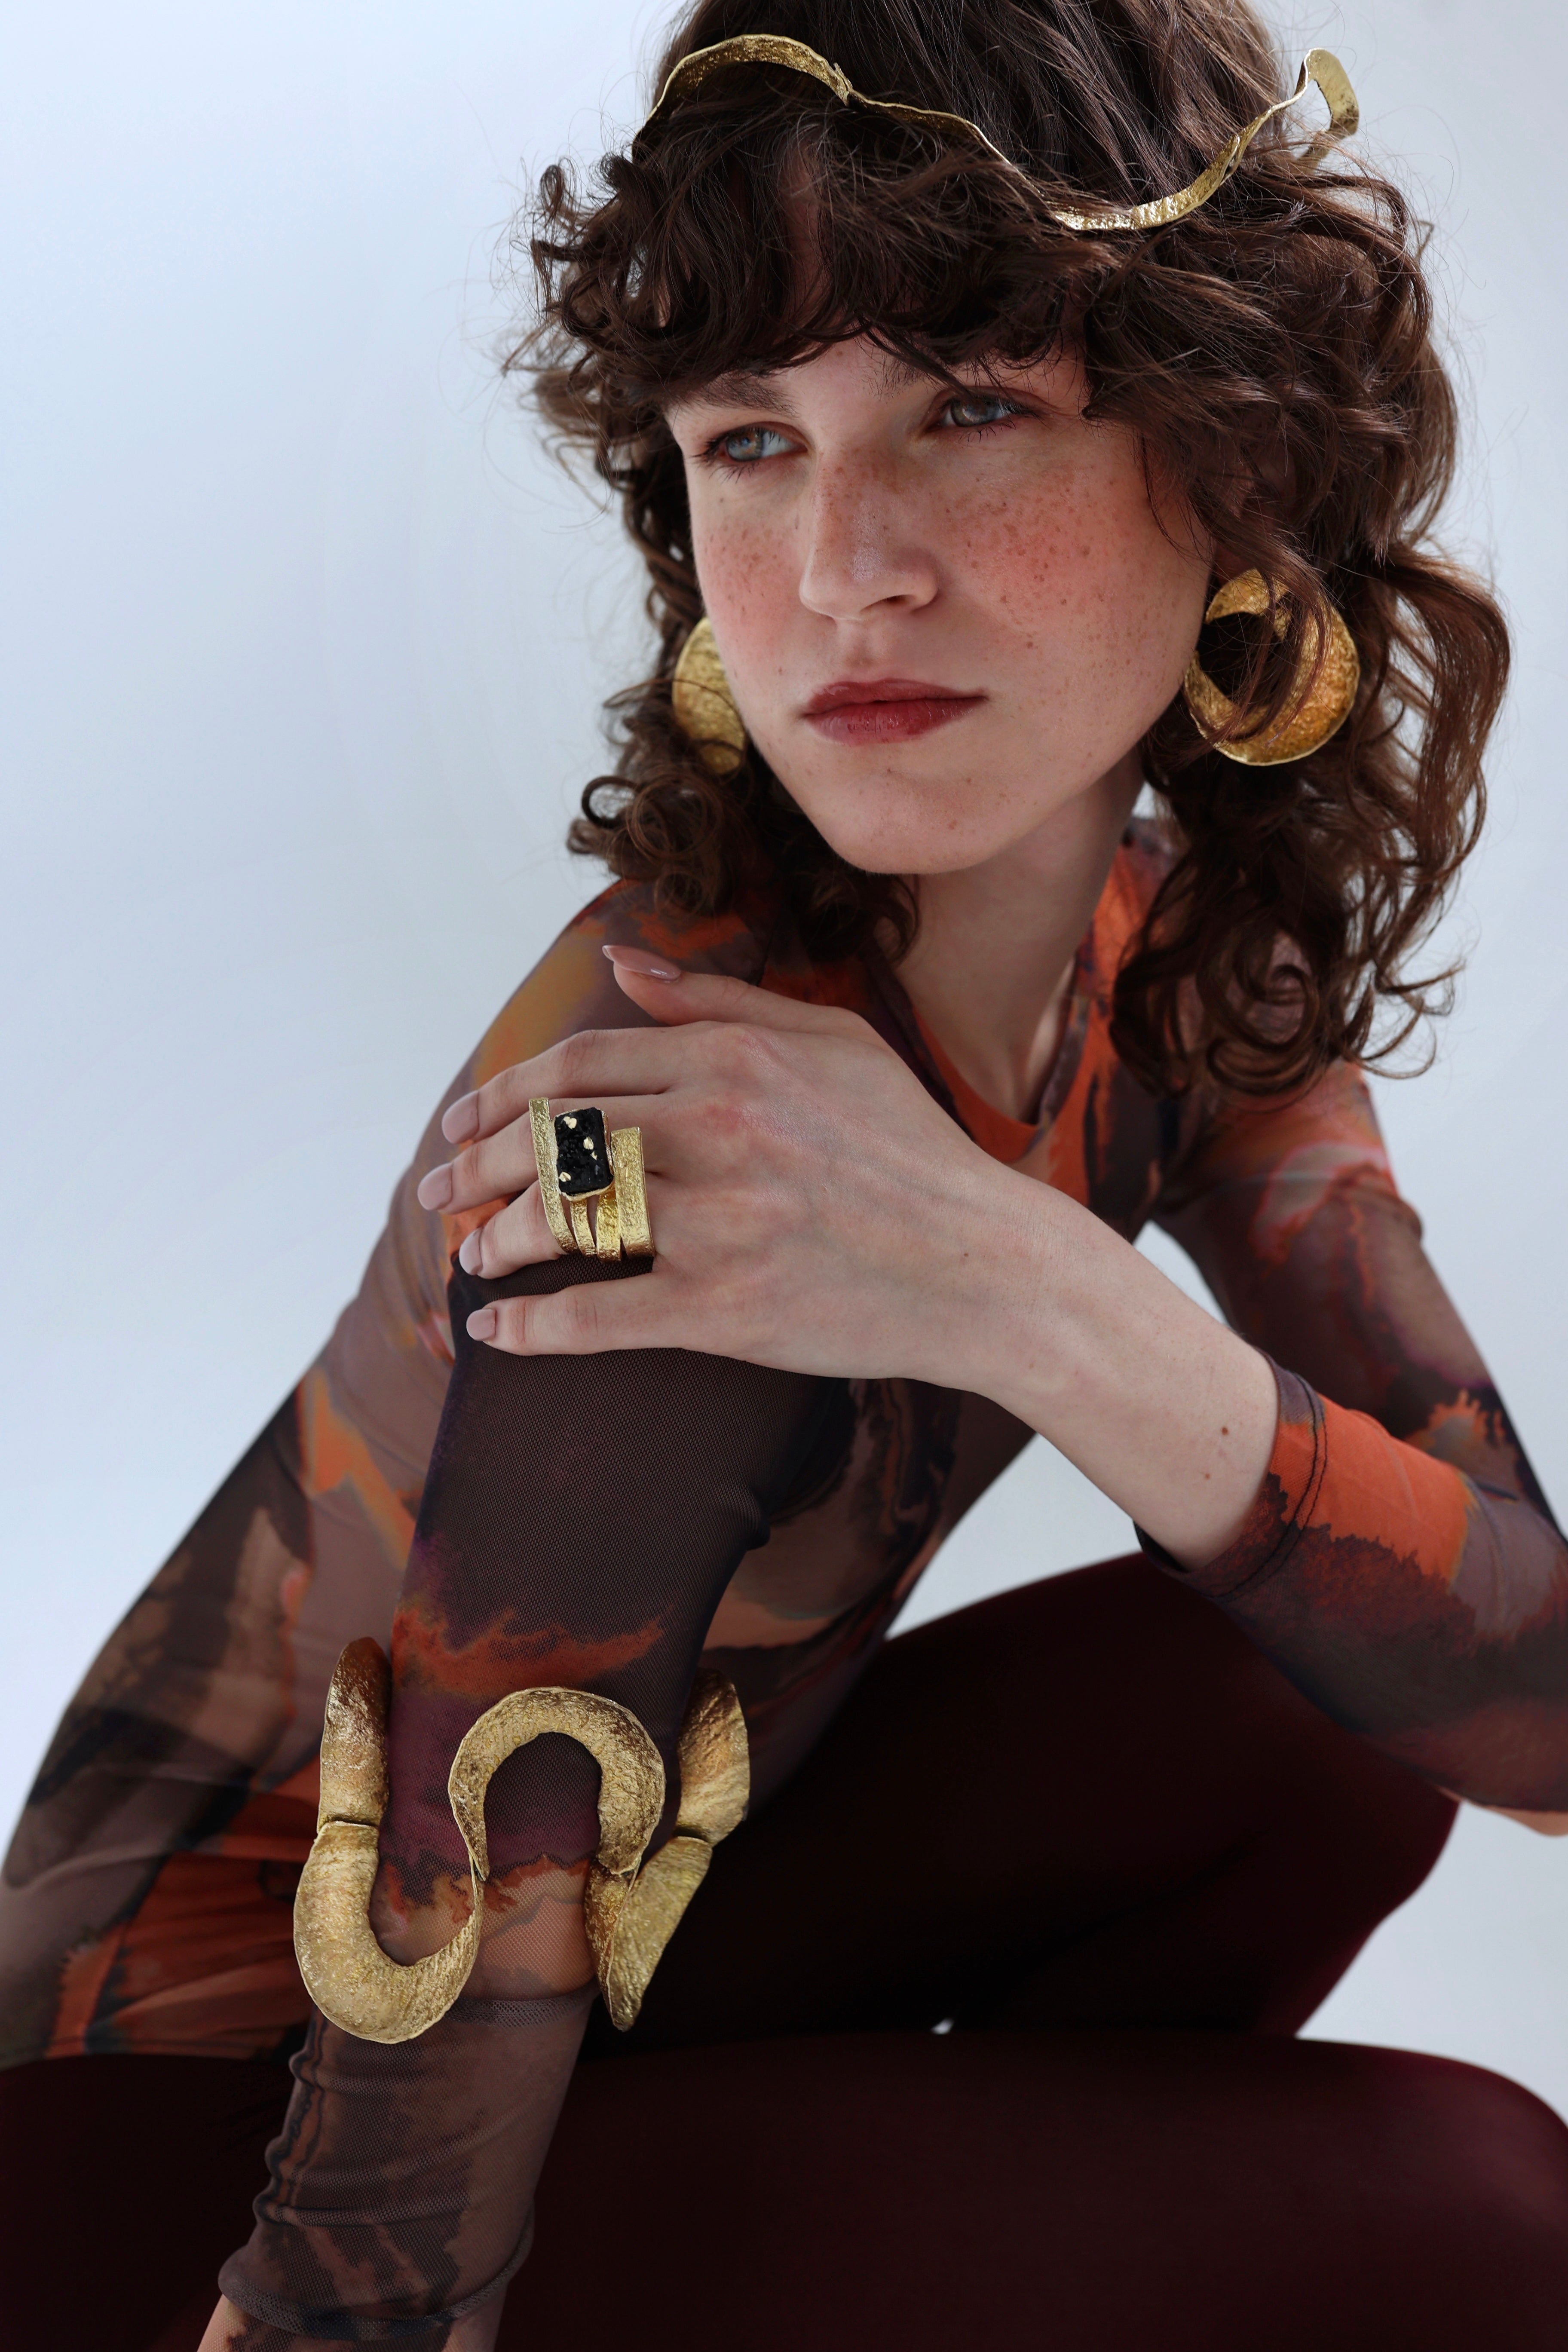 Woman wearing statement artisan jewelry